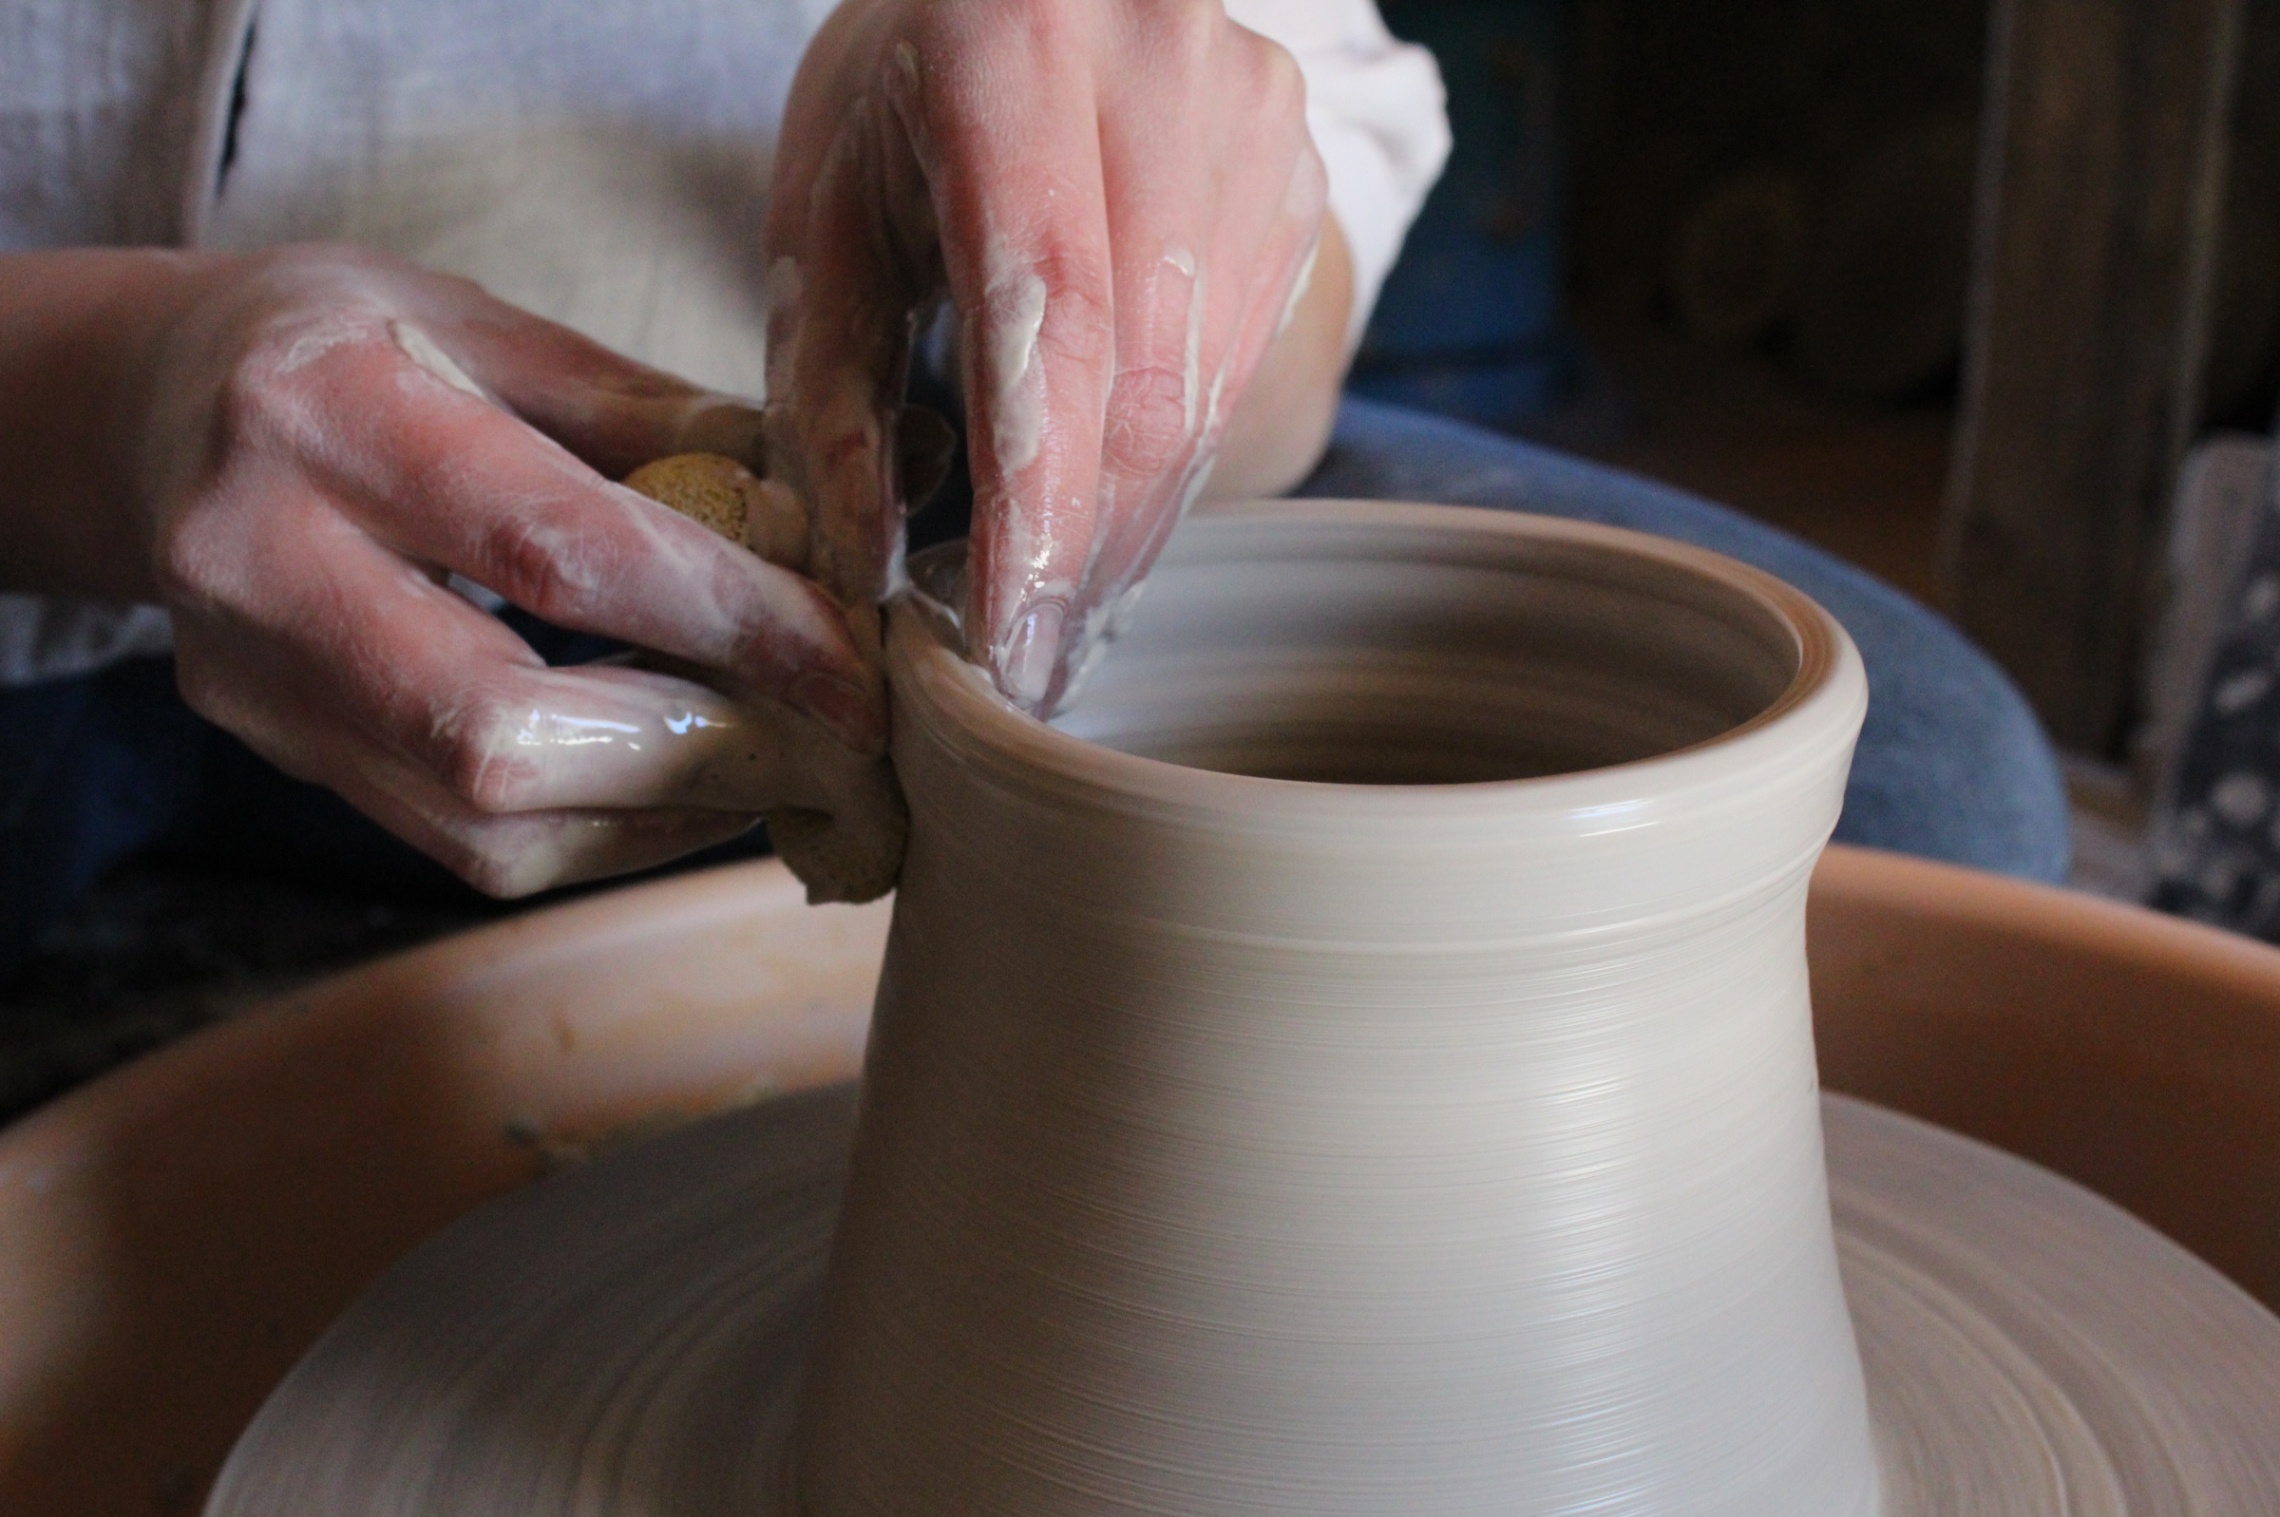 Kädet savessa keramikka-astia valmistuu ja dreija pyörii.